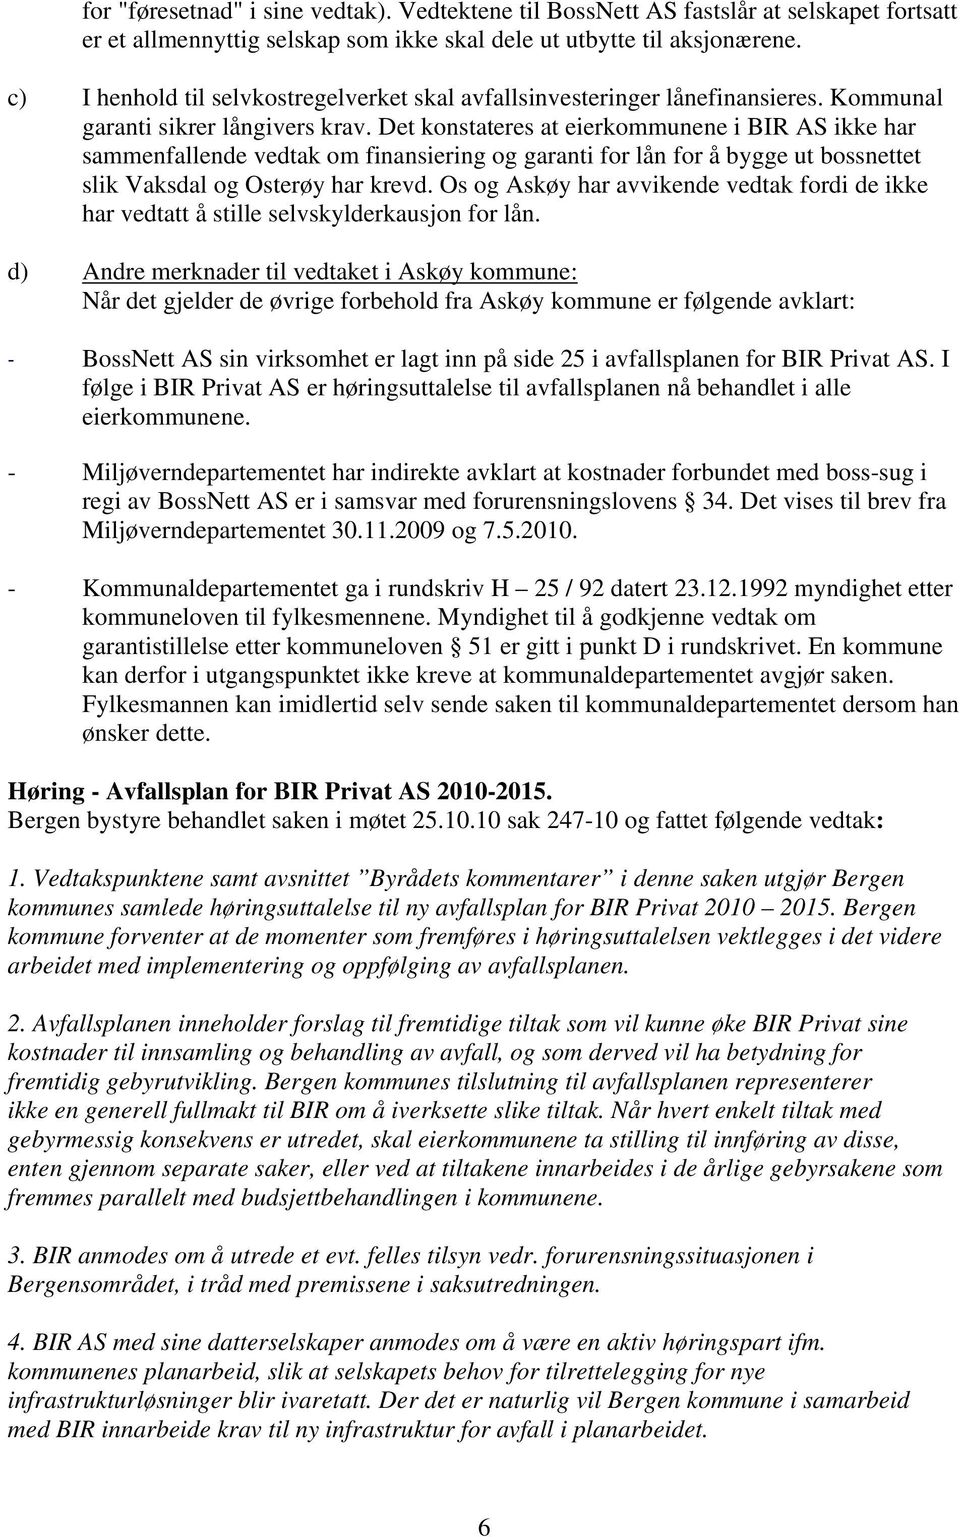 Det konstateres at eierkommunene i BIR AS ikke har sammenfallende vedtak om finansiering og garanti for lån for å bygge ut bossnettet slik Vaksdal og Osterøy har krevd.